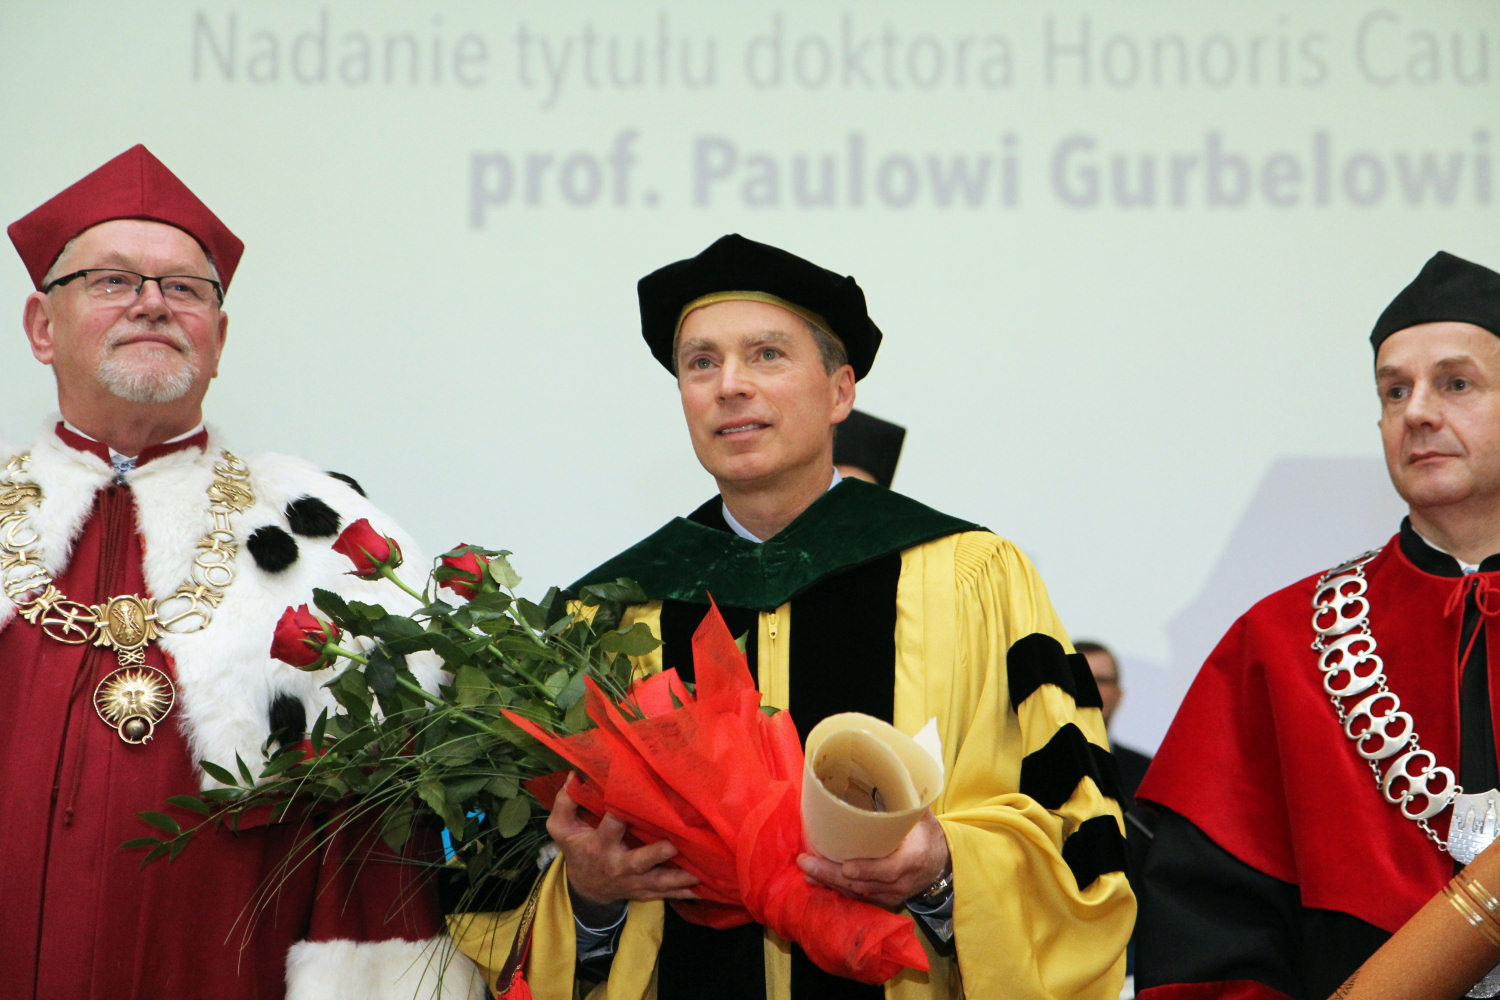 Prof. Paul Alfred Gurbel